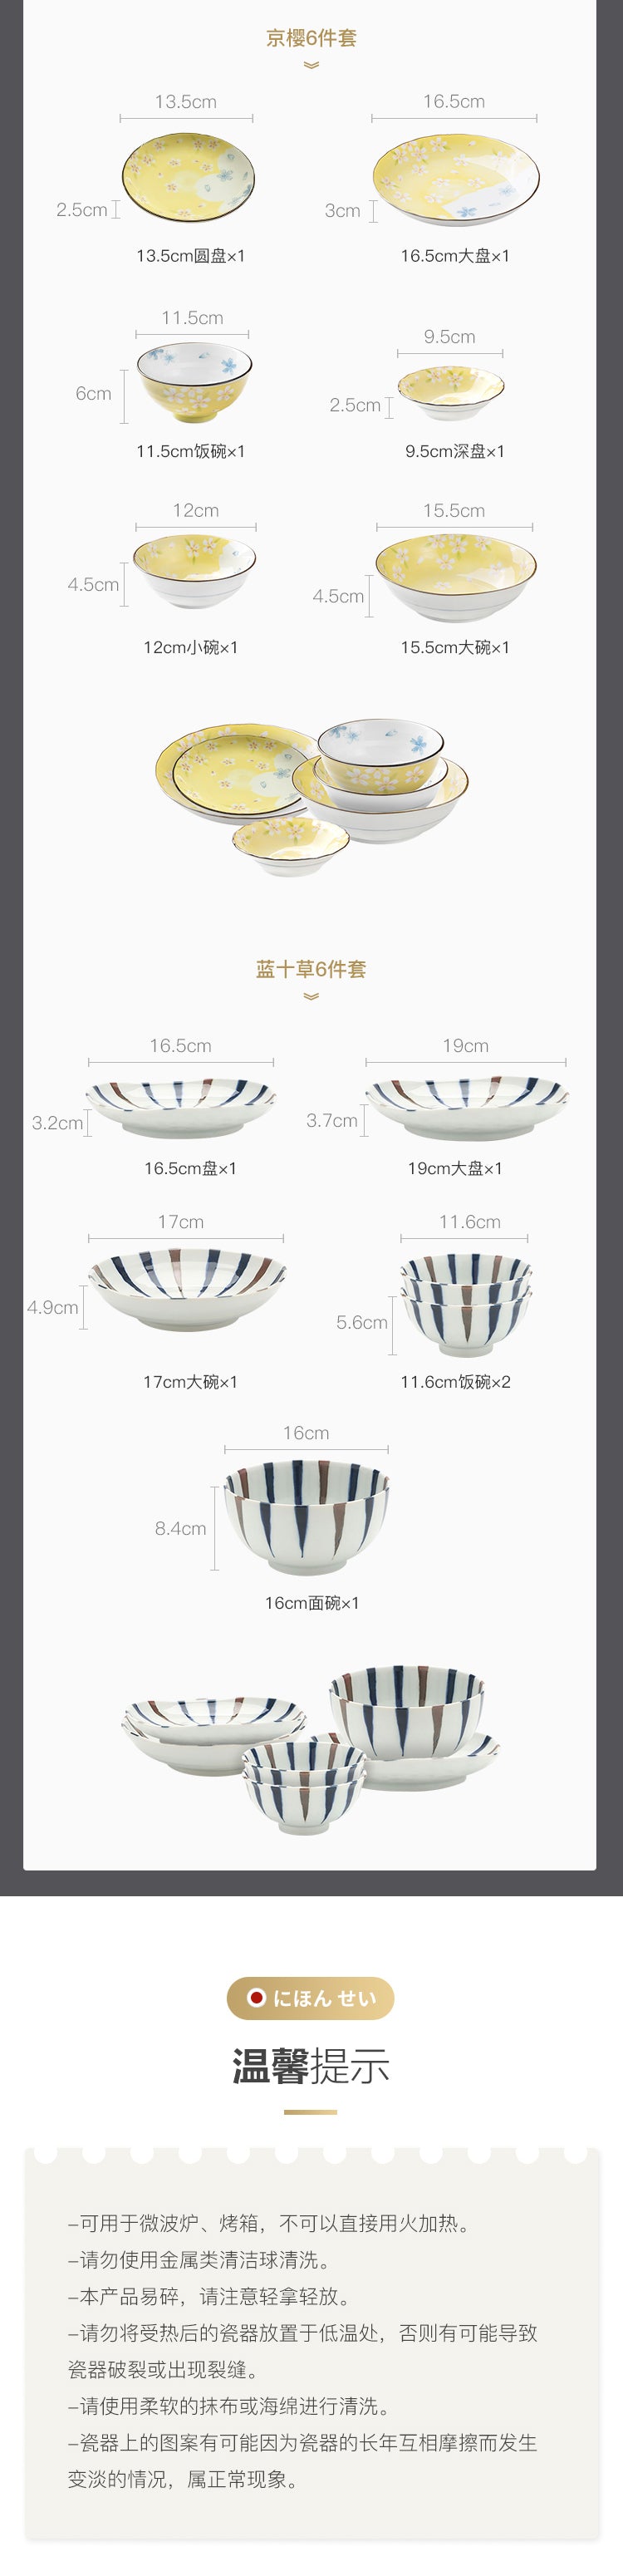 【美仓发货5-7日达】网易严选 日本制造 蓝十草餐具6件套 日式餐具 2人食